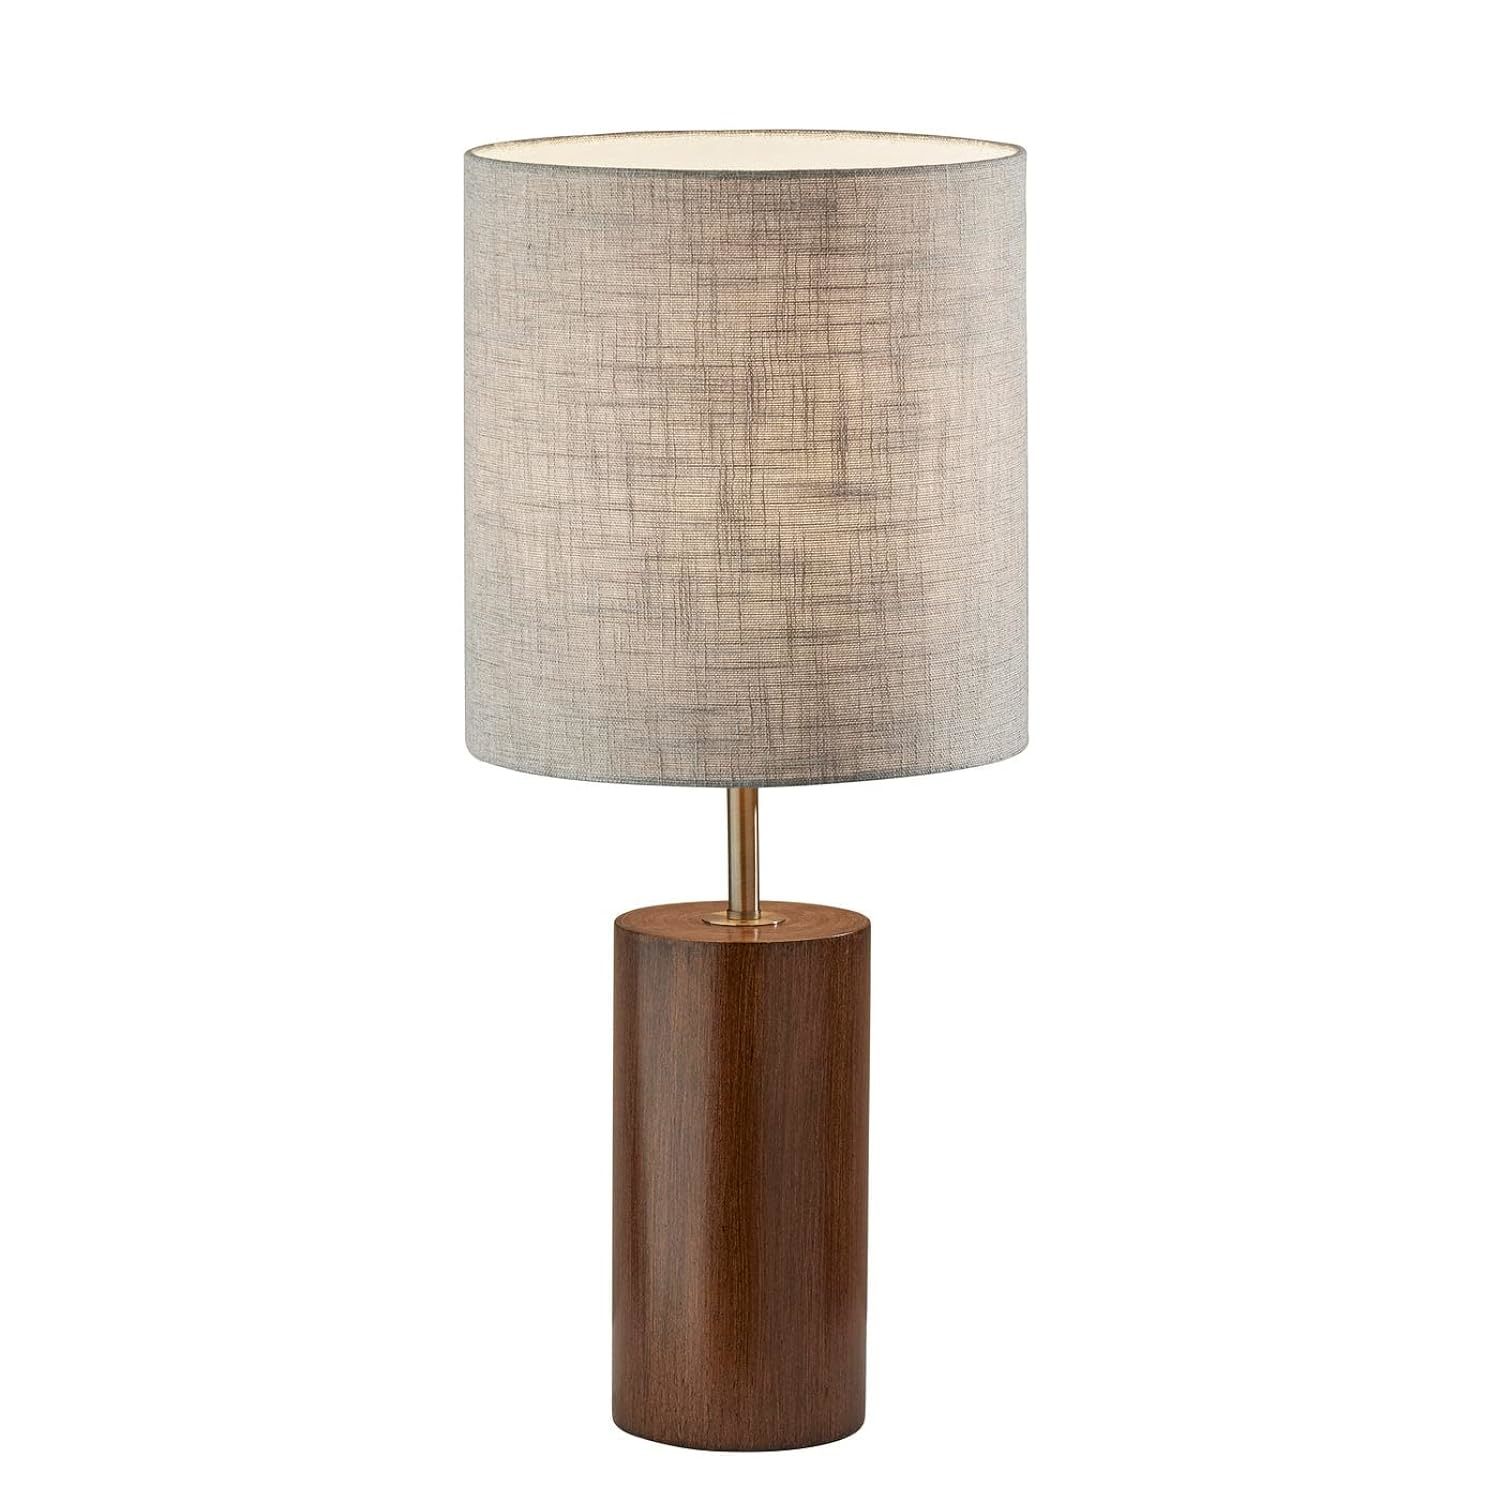 Adesso Dean Table Lamp - $233.99